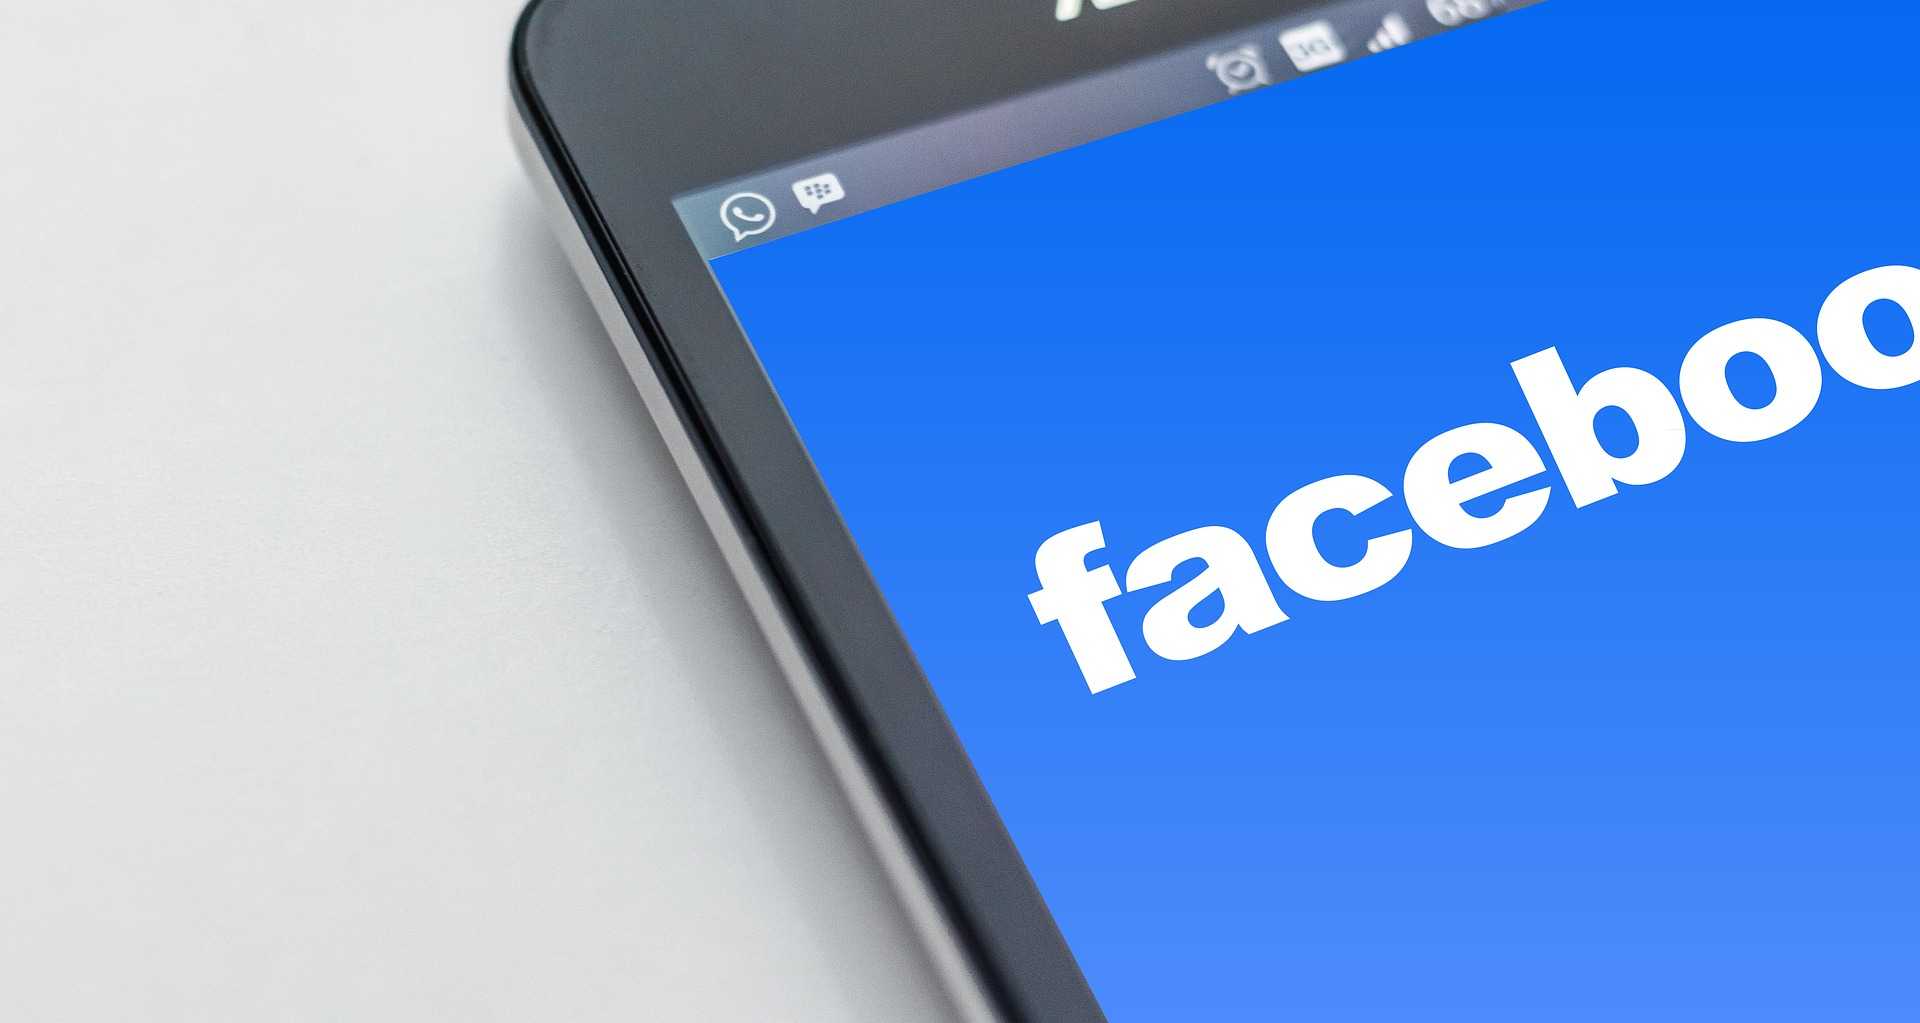 Facebook este o rețea socială și social media americană, creată inițial pe 4 februarie 2004 ca serviciu universitar gratuit și extins ulterior în scopuri comerciale, deținută și operată de compania Meta[2], și bazată pe o platformă web 2.0 scrisă în diverse limbaje de programare